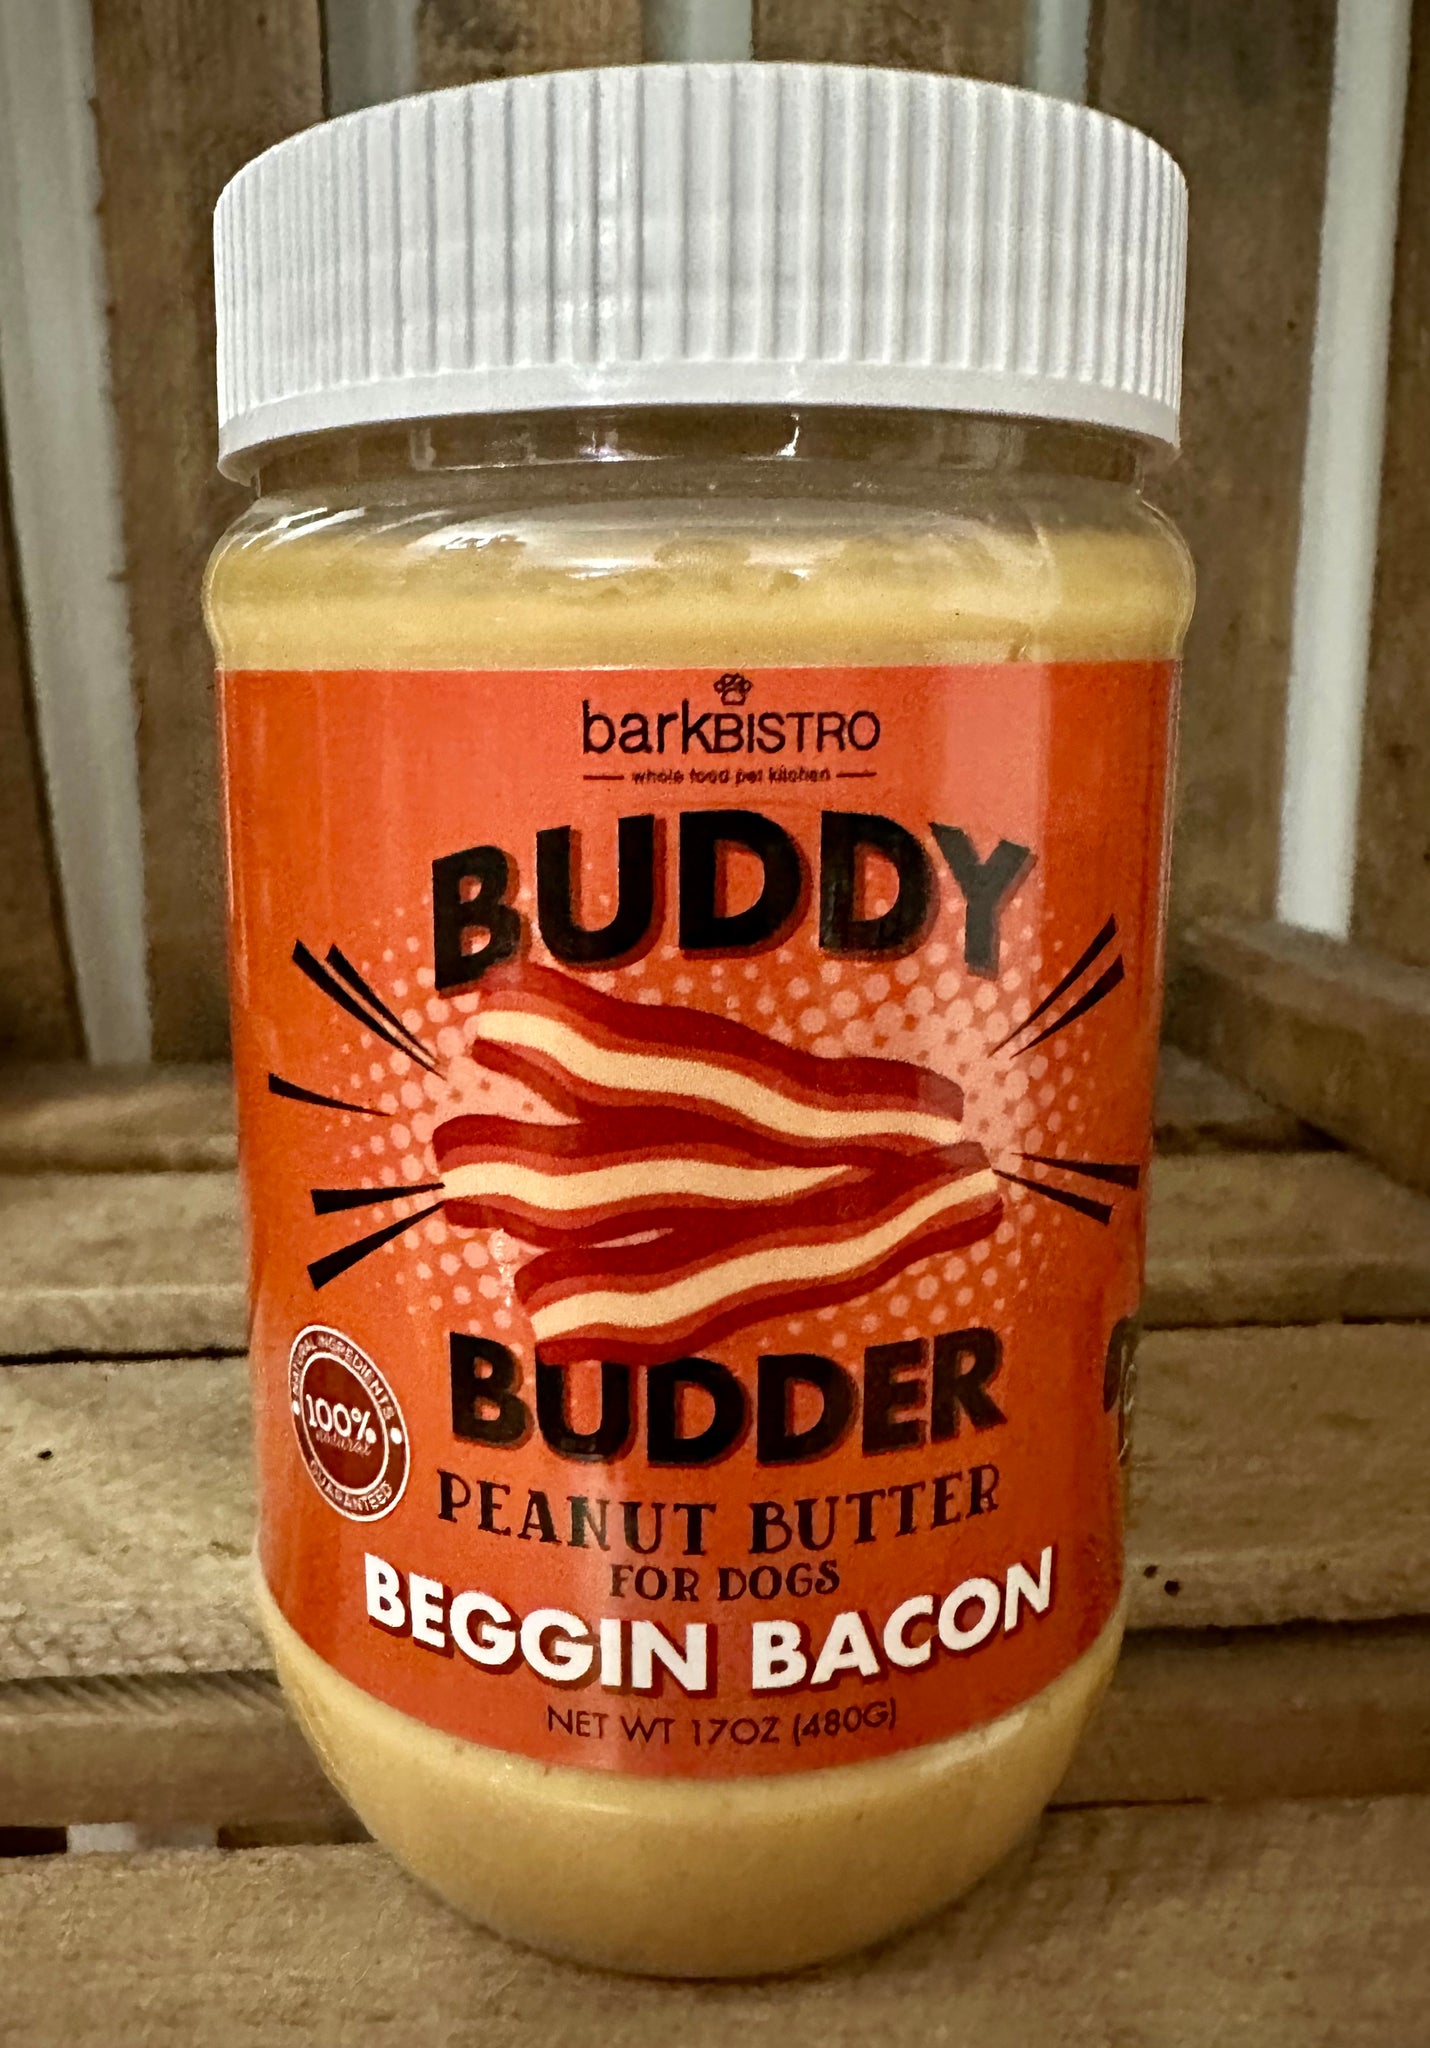 Buddy Budder